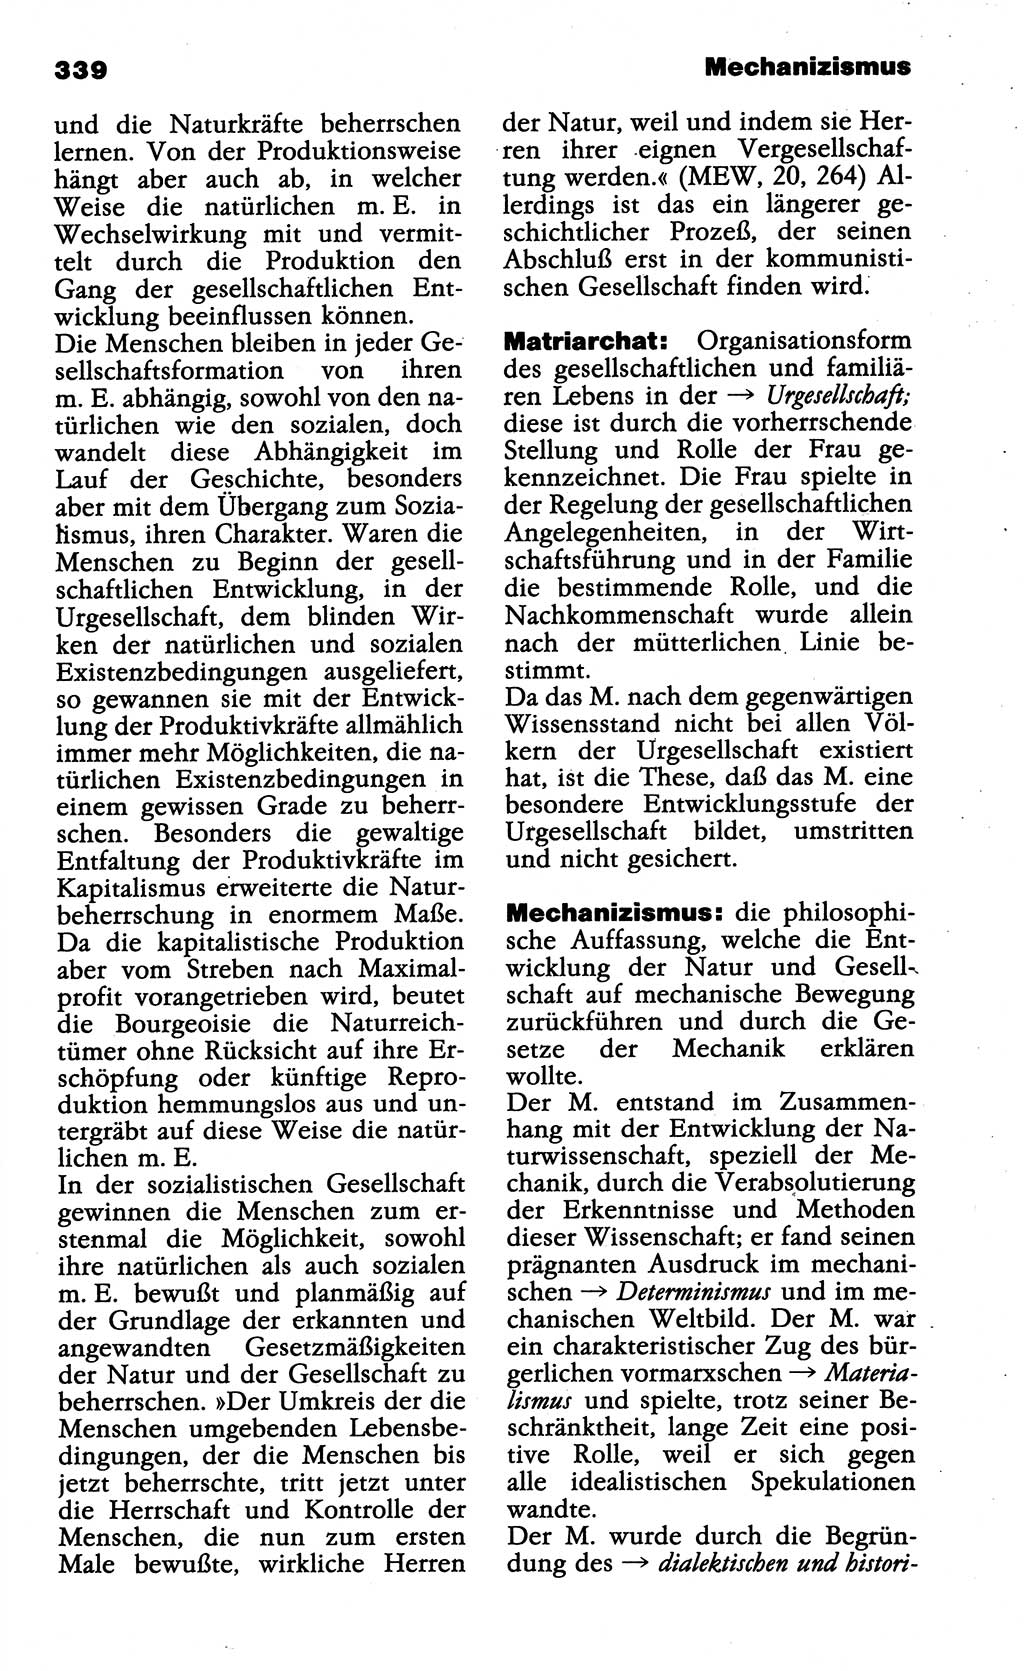 Wörterbuch der marxistisch-leninistischen Philosophie [Deutsche Demokratische Republik (DDR)] 1985, Seite 339 (Wb. ML Phil. DDR 1985, S. 339)